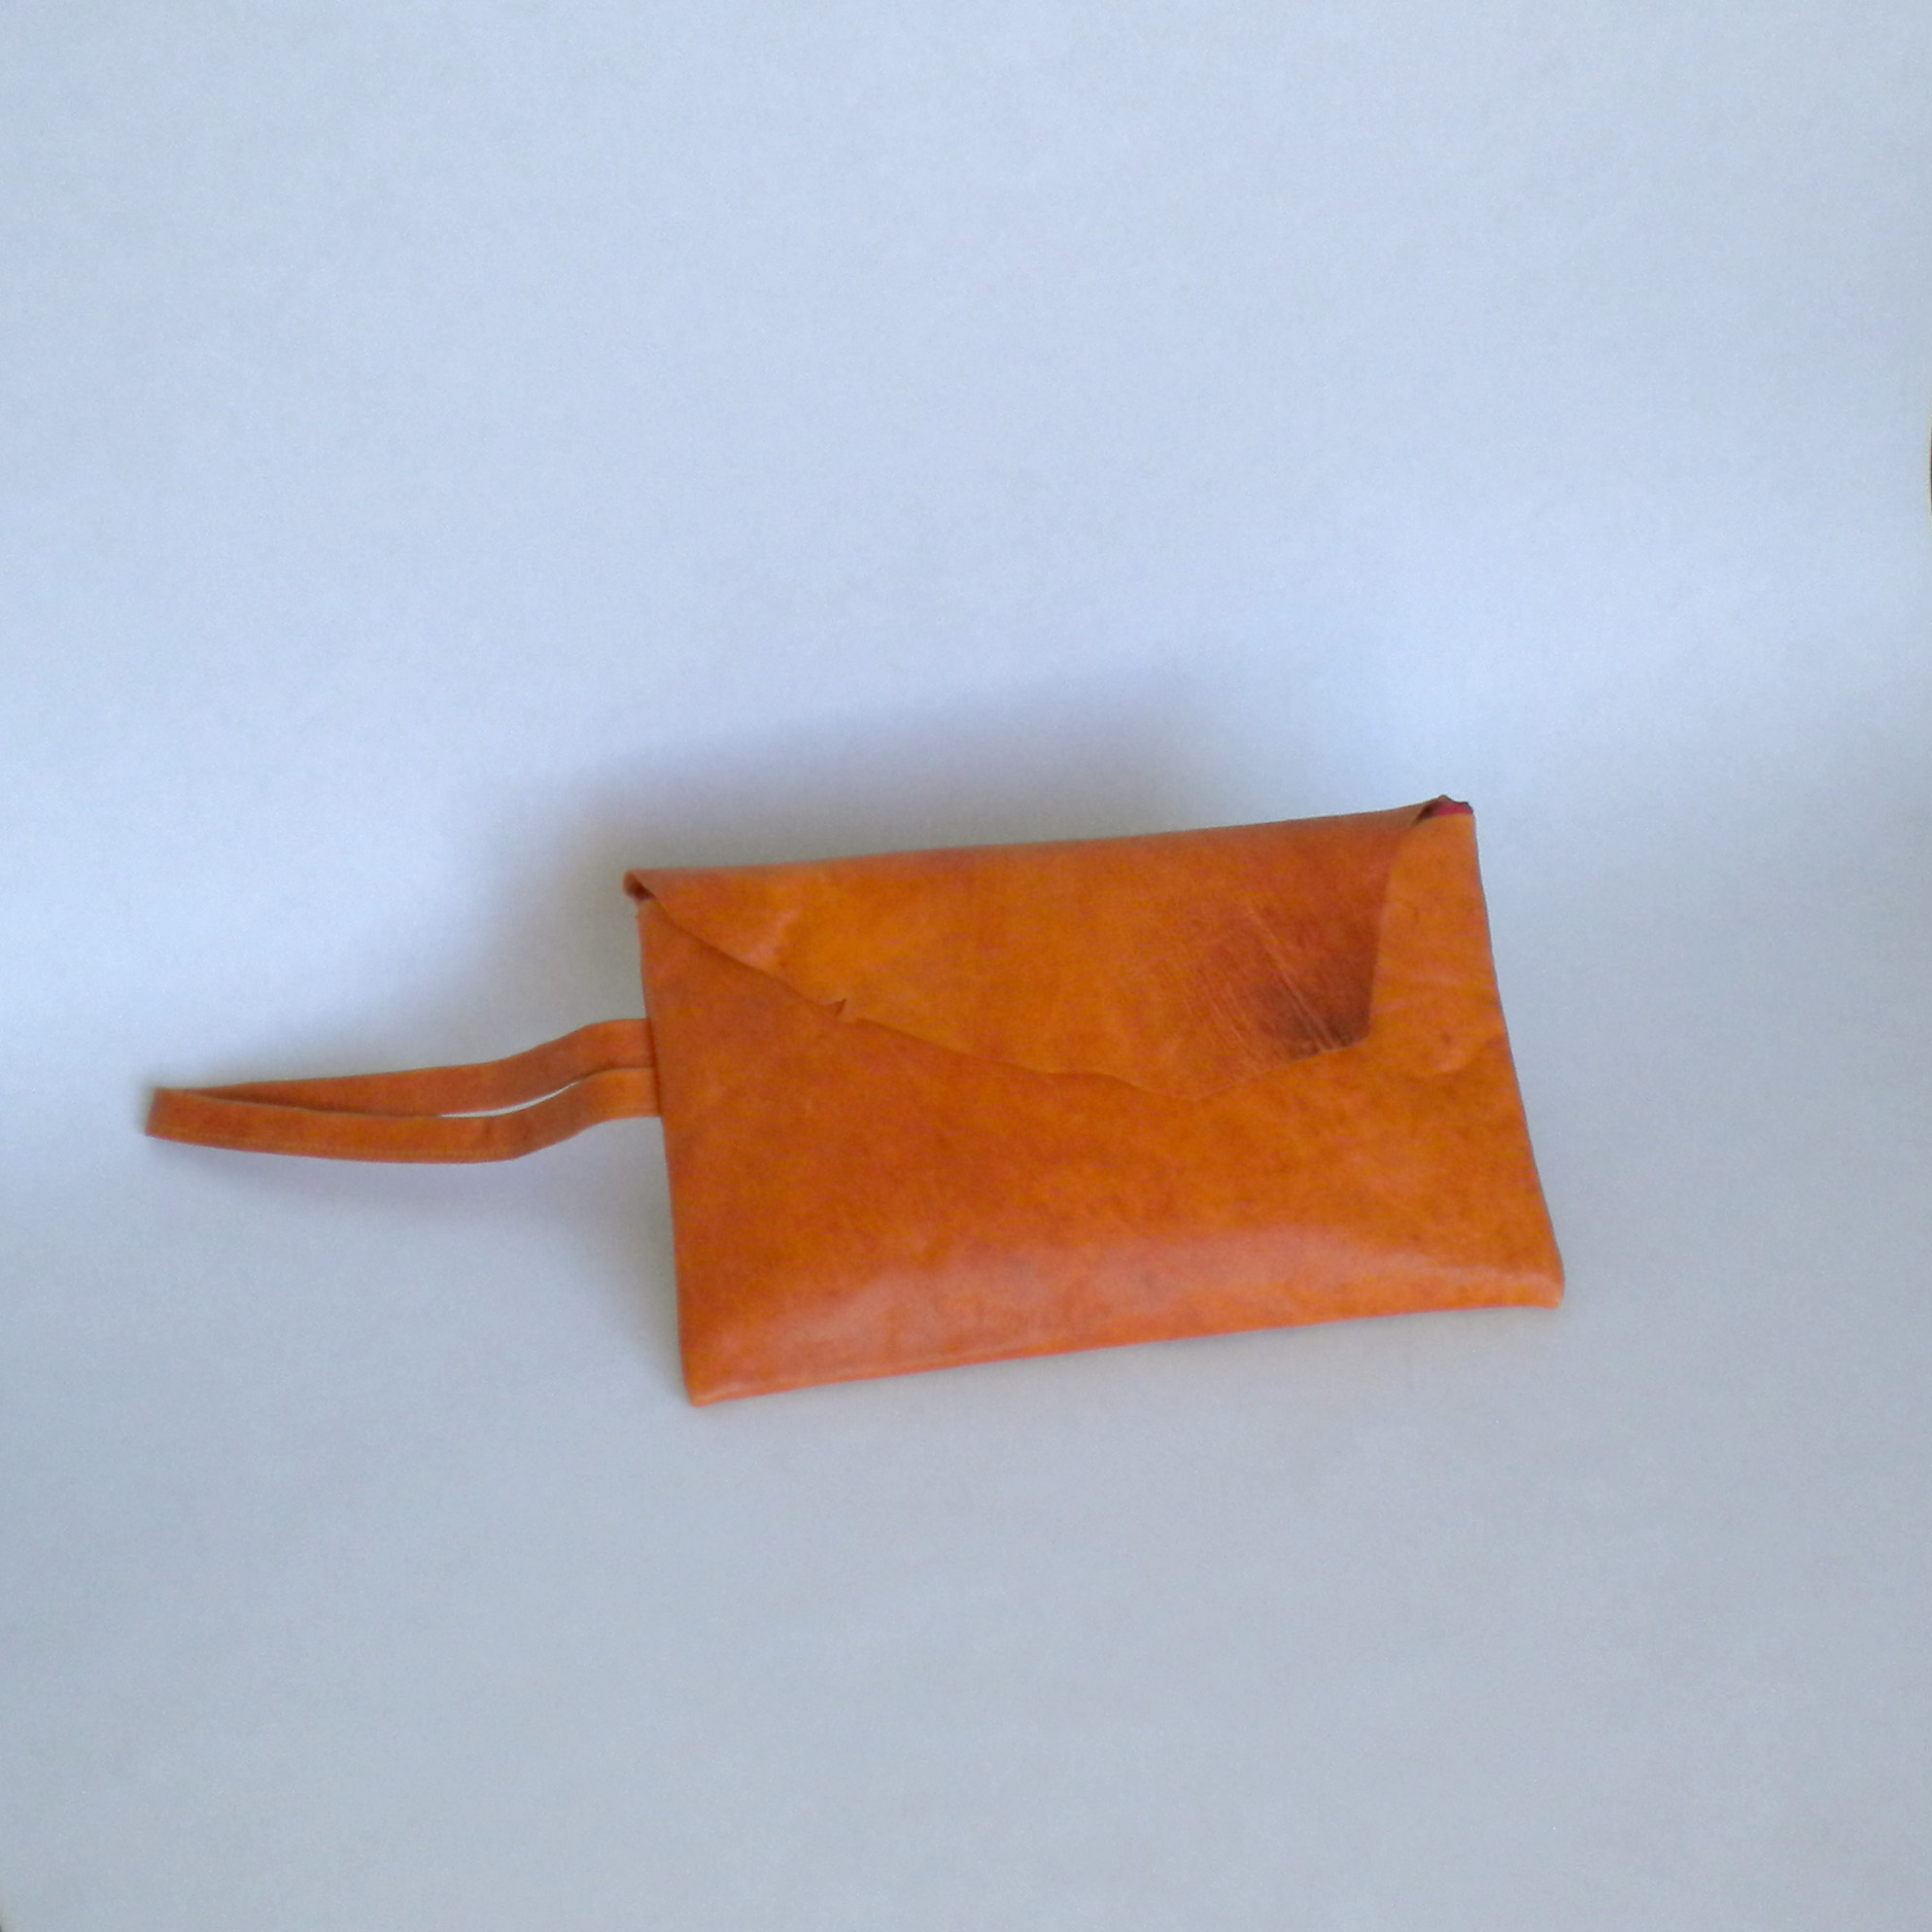  Orange leather purse 